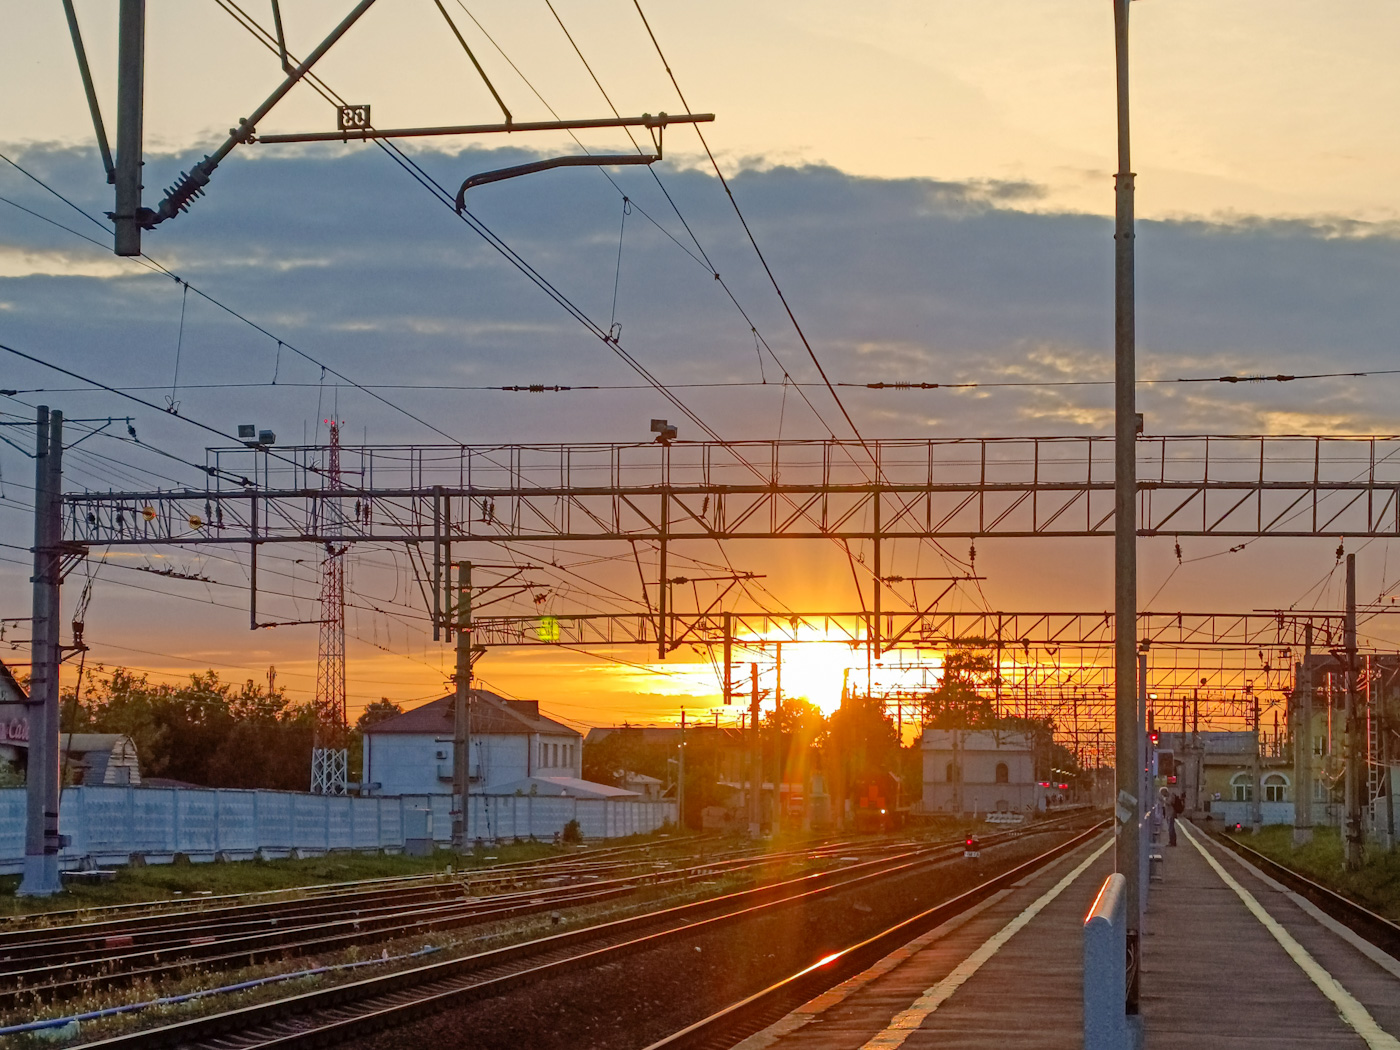 Октябрьская железная дорога — Станции; Фотозарисовки (Октябрьская железная дорога)